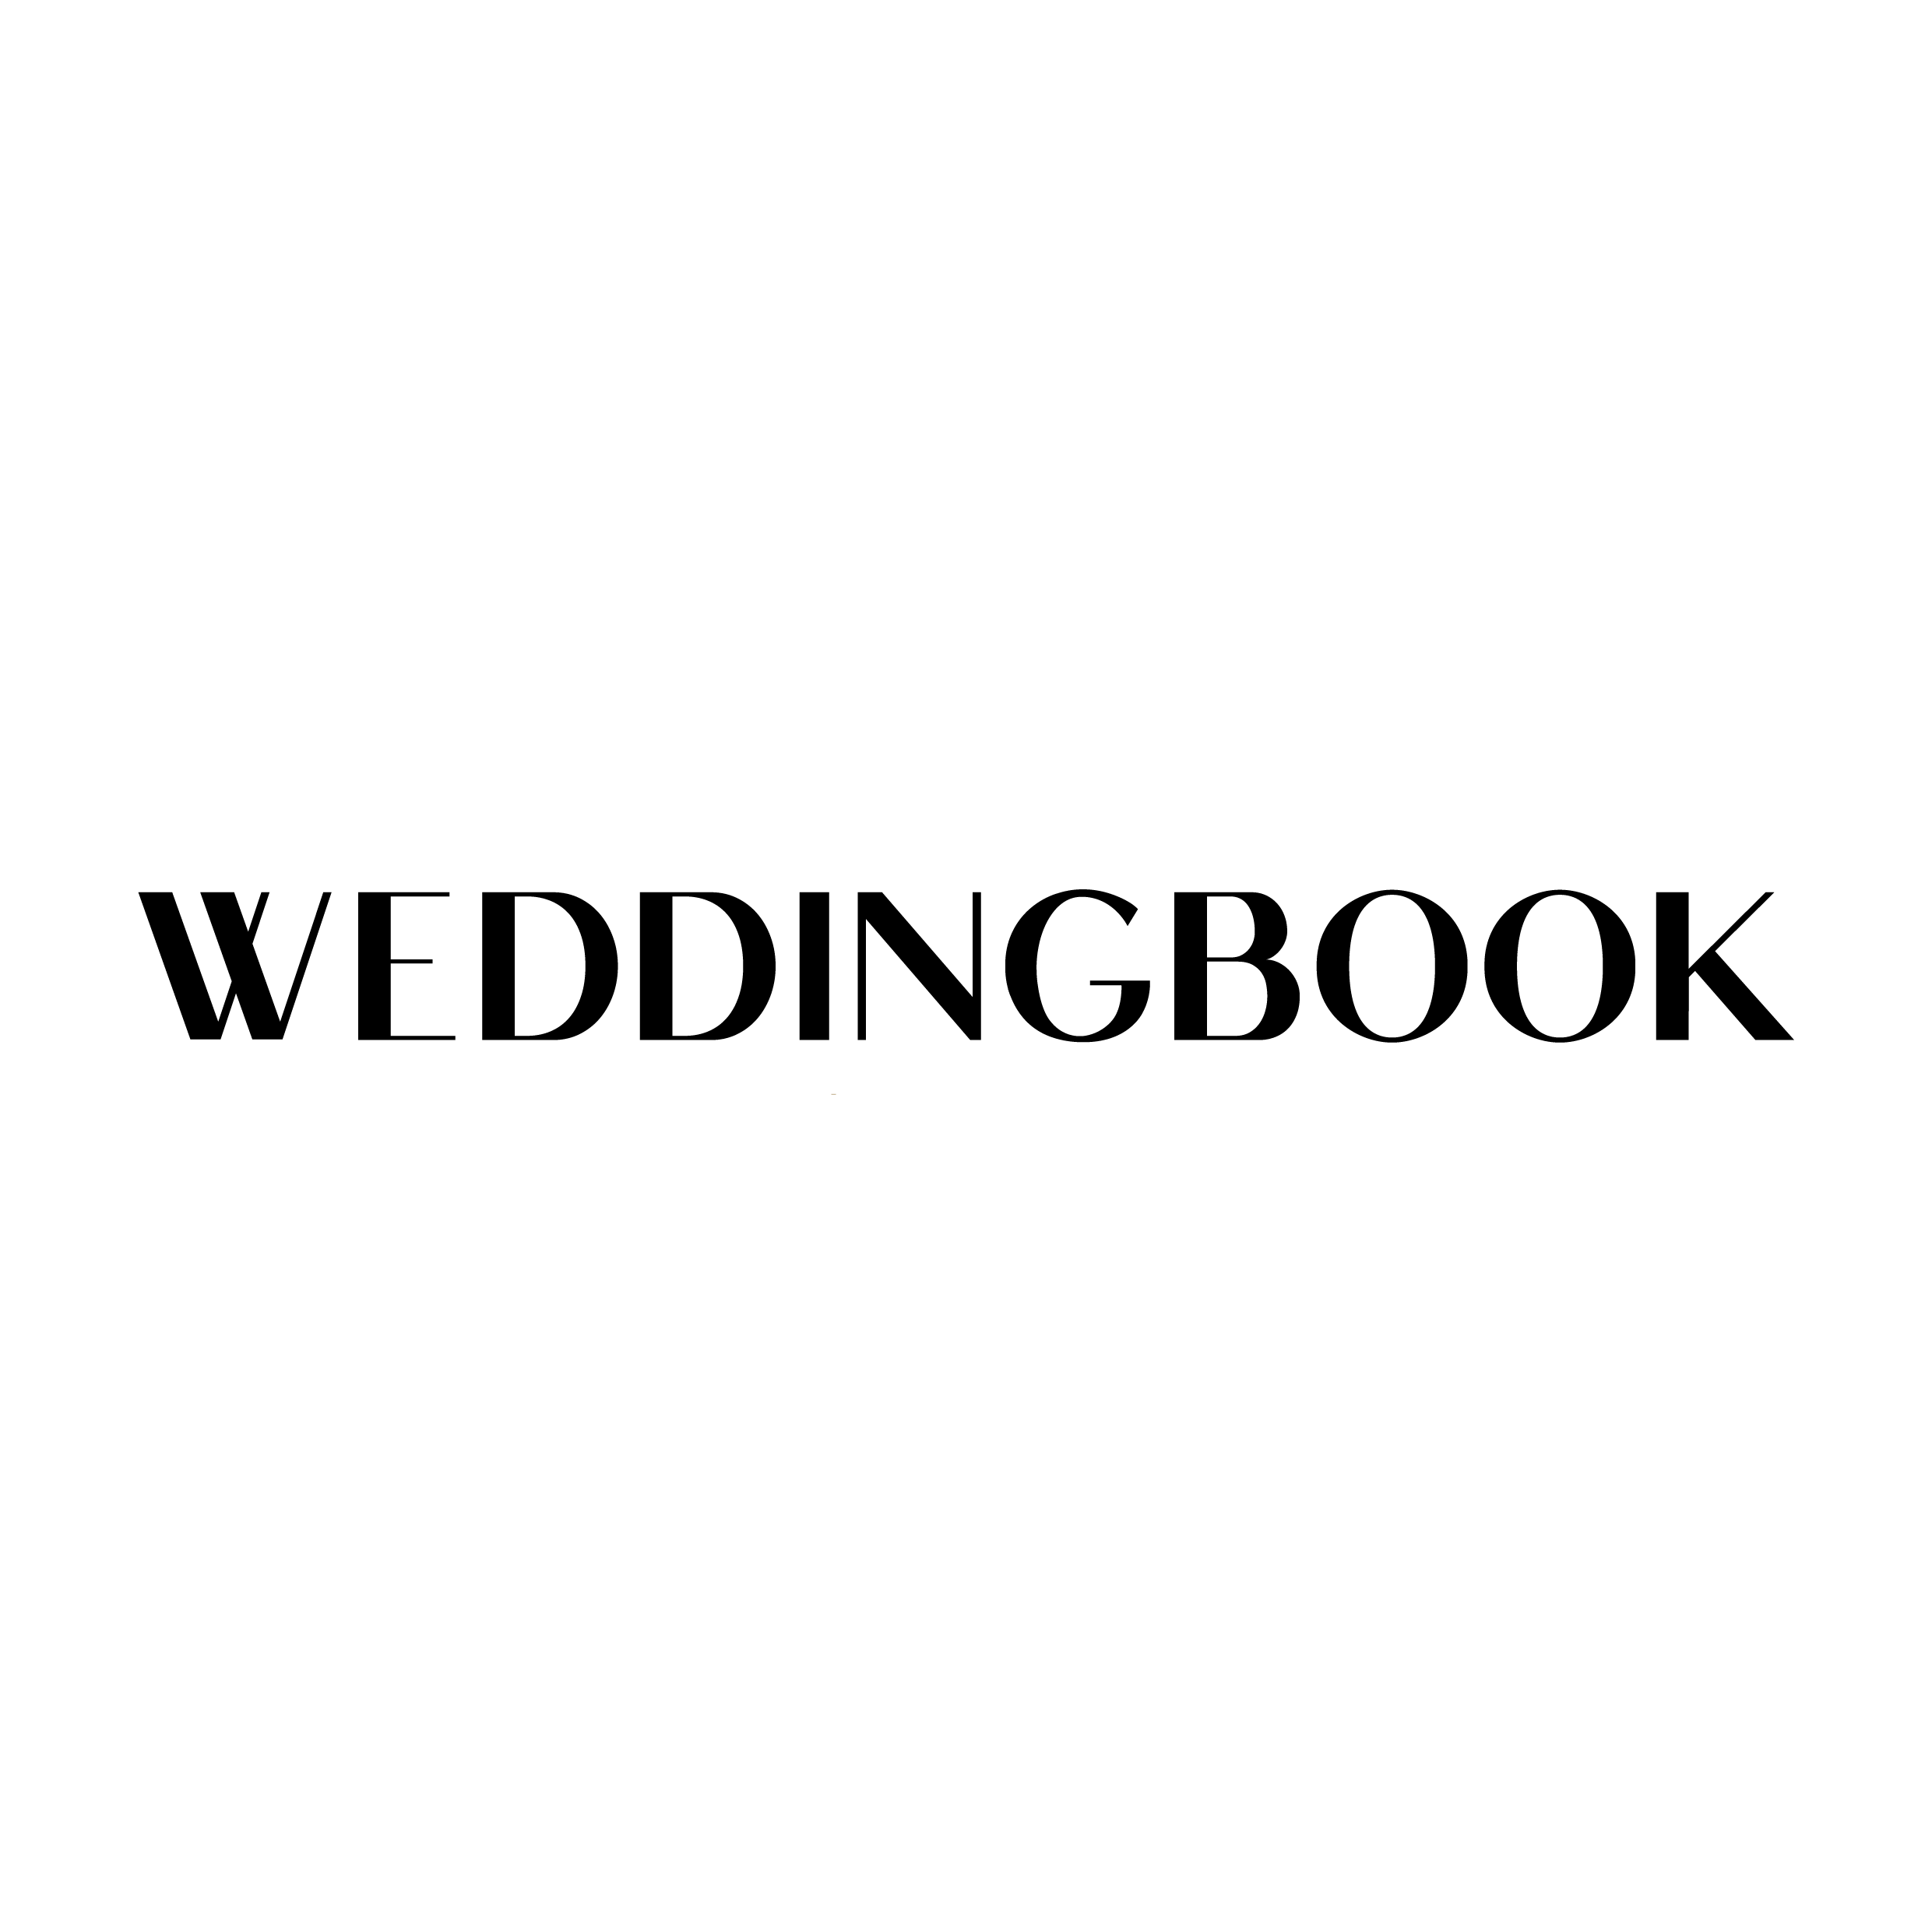 Weddingbook Vietnam